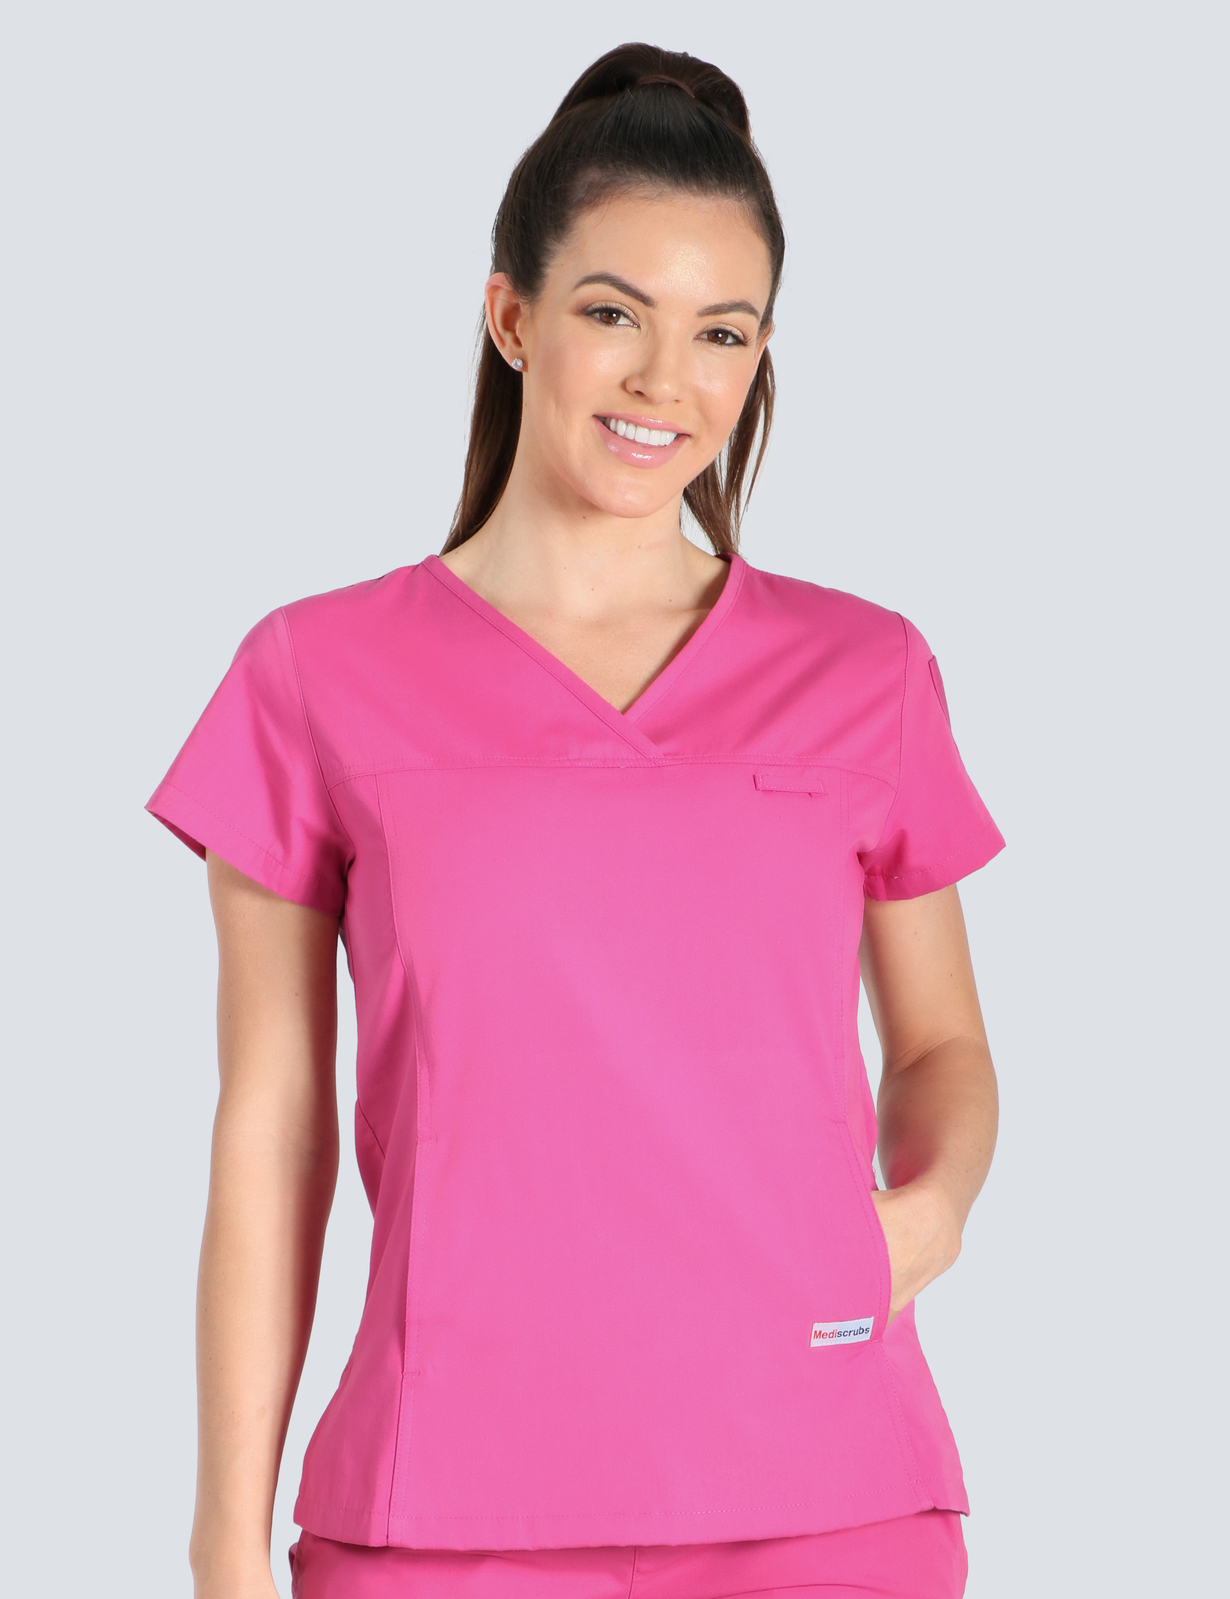 Queensland Children's Hospital Emergency Department Assistant in Nursing  Uniform Top Bundle  (Women's Fit Top in Pink incl Logos)